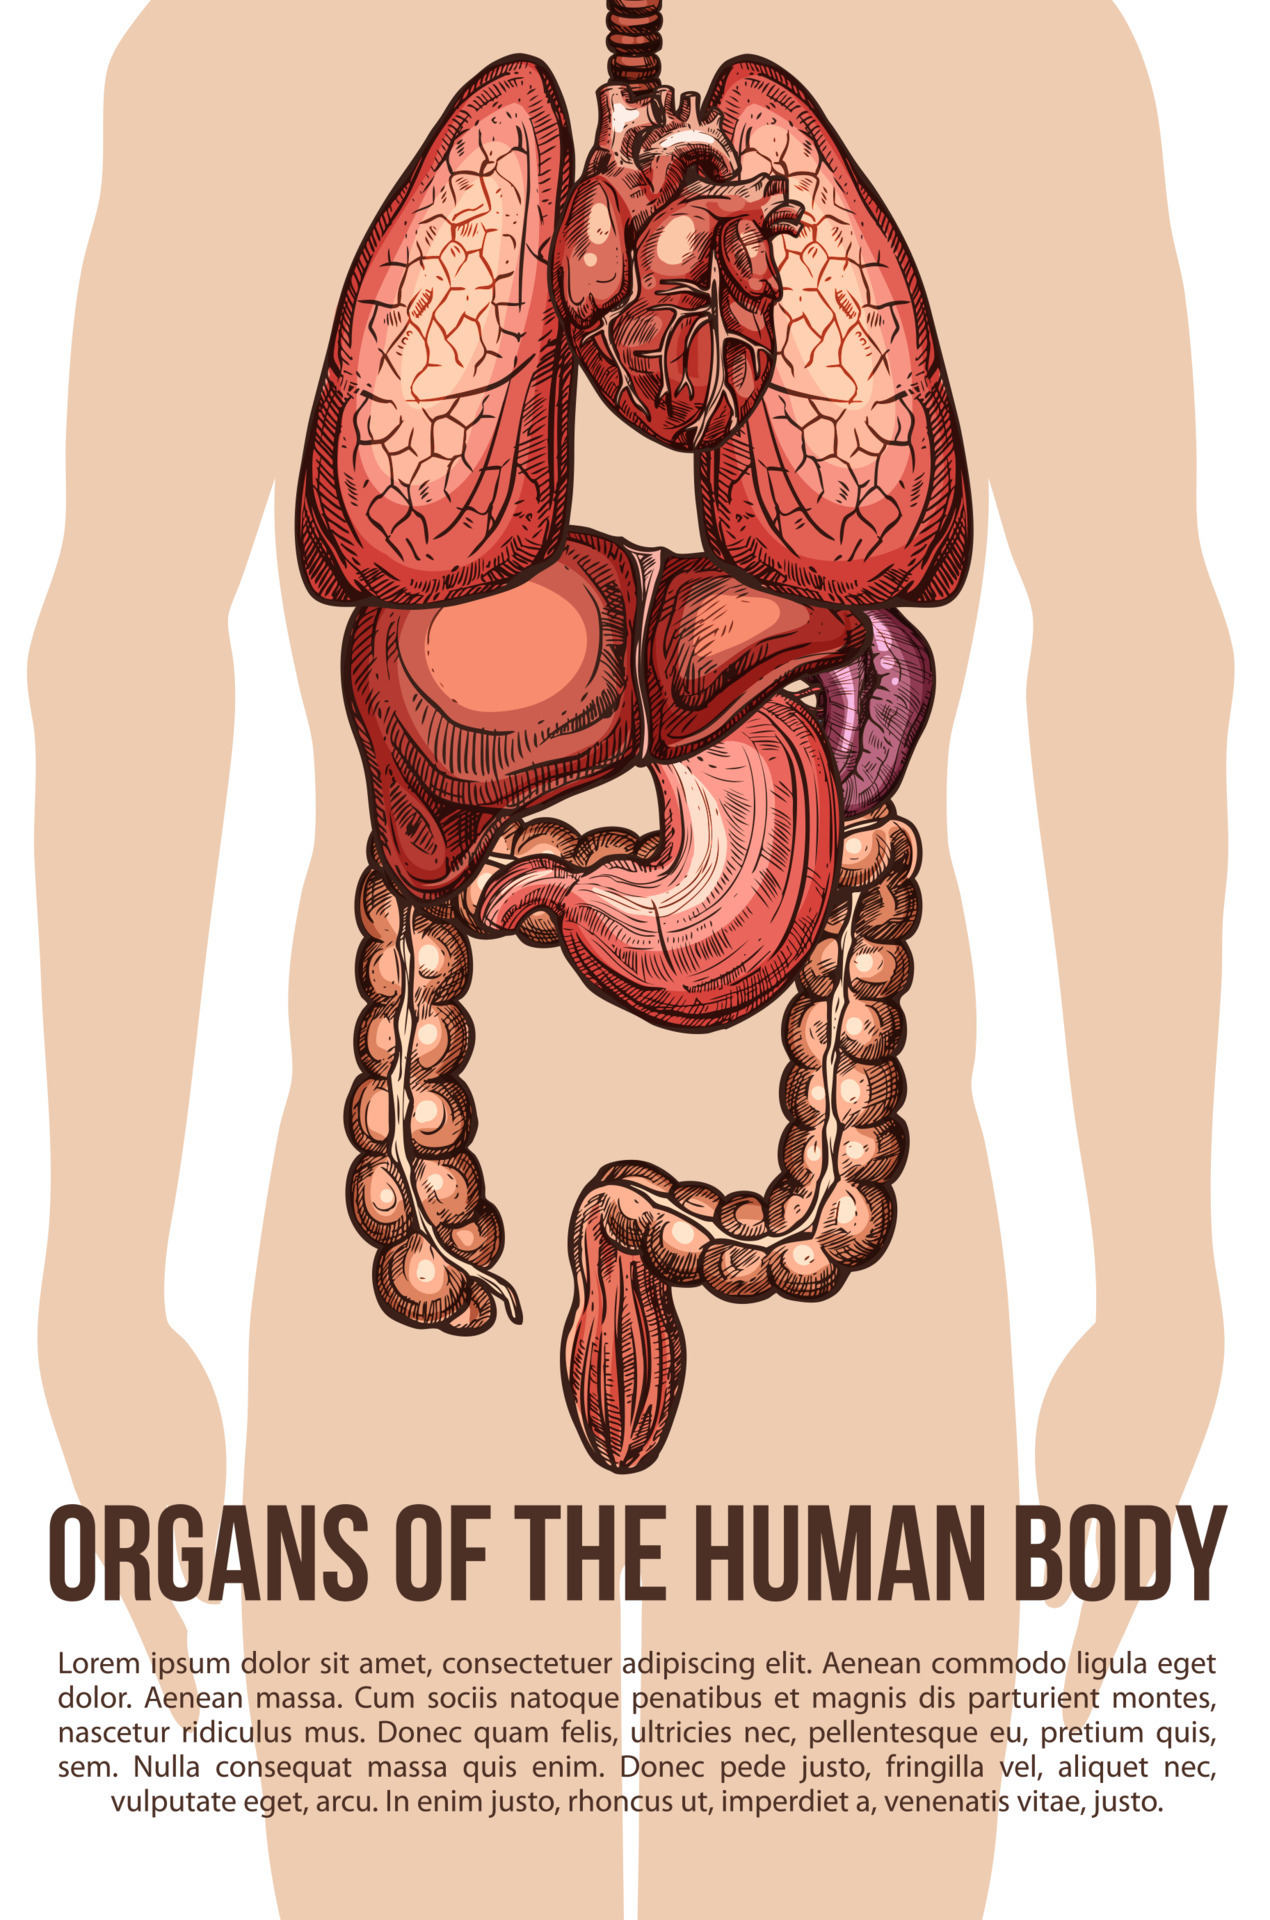 mänsklig organ kropp systemet vektor skiss affisch 13062842 - Ladda ner  gratis vektorgrafik, arkivgrafik och bilder